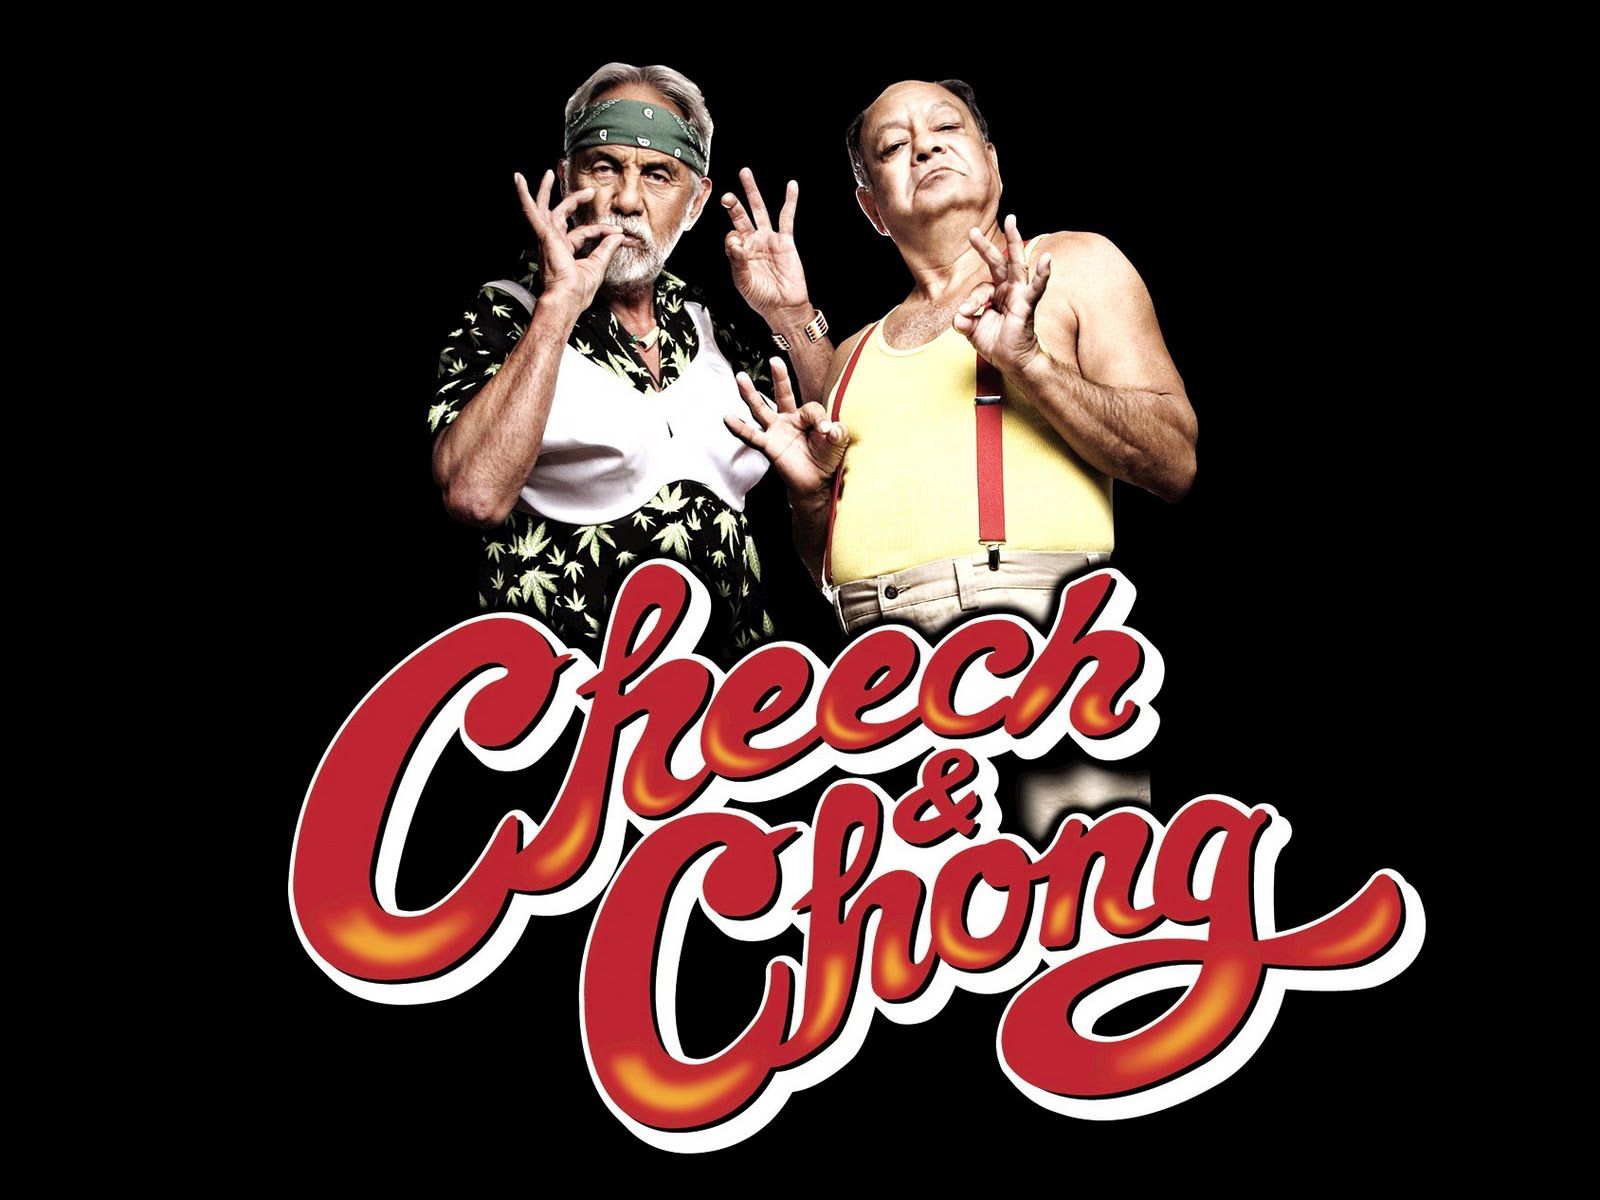 Cheech and Chong Twitter Background. Cheech Wizard Wallpaper, Cheech and Chong Twitter Background and Cheech Marin Wallpaper